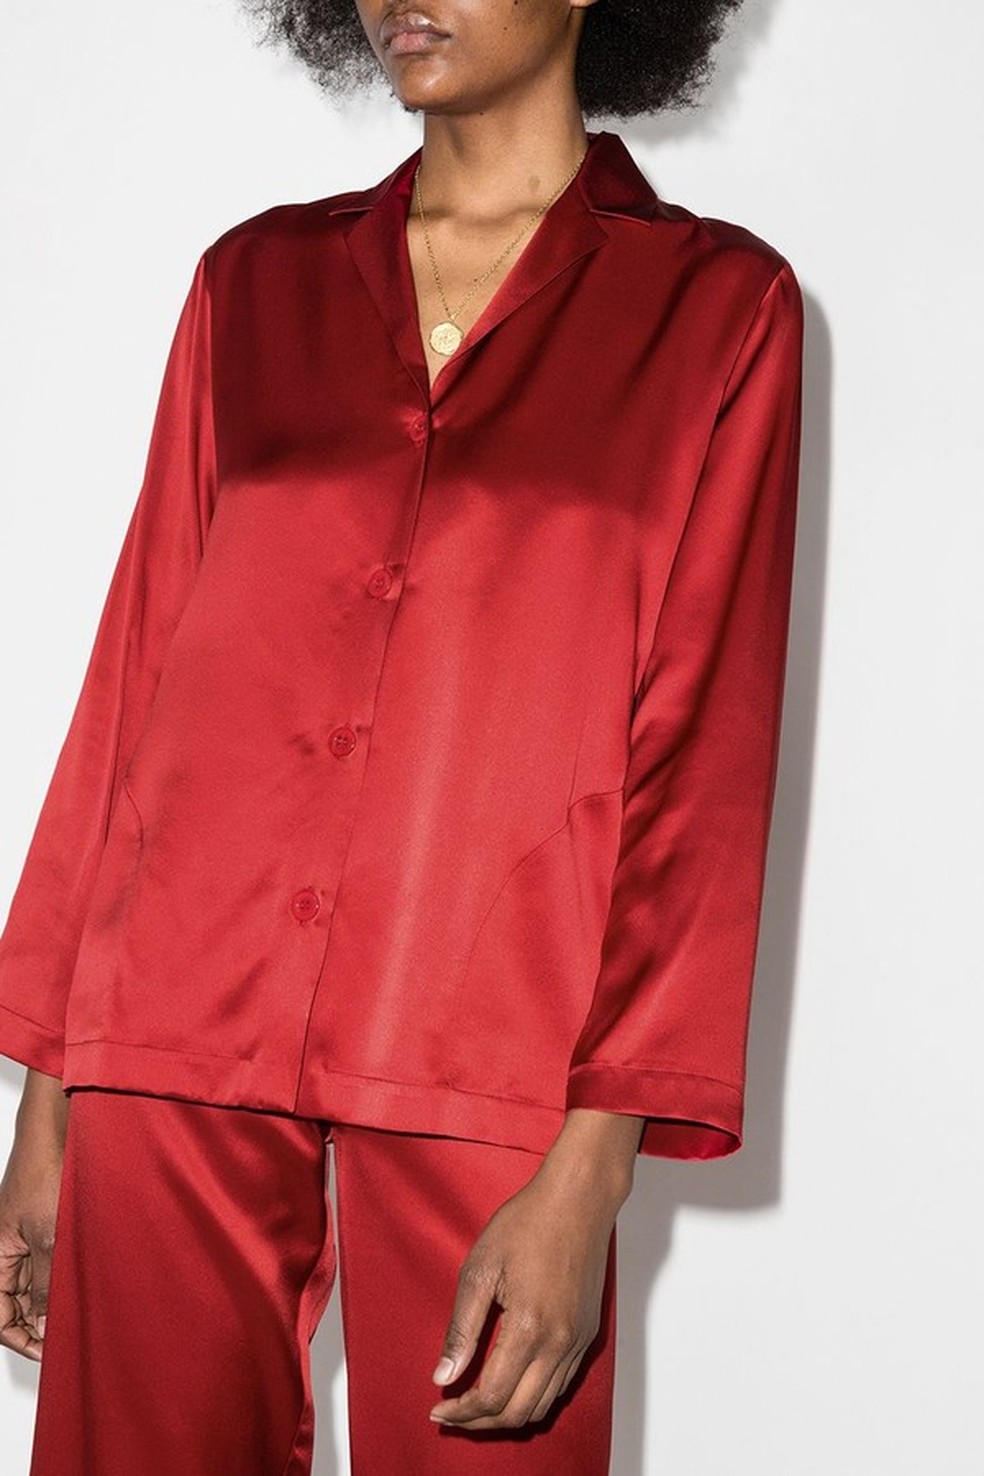 Vermelho intenso para o pijama de seda da La Perla (R$ 3.198 no Farfetch) (Foto: Reprodução/Farfetch) — Foto: Glamour